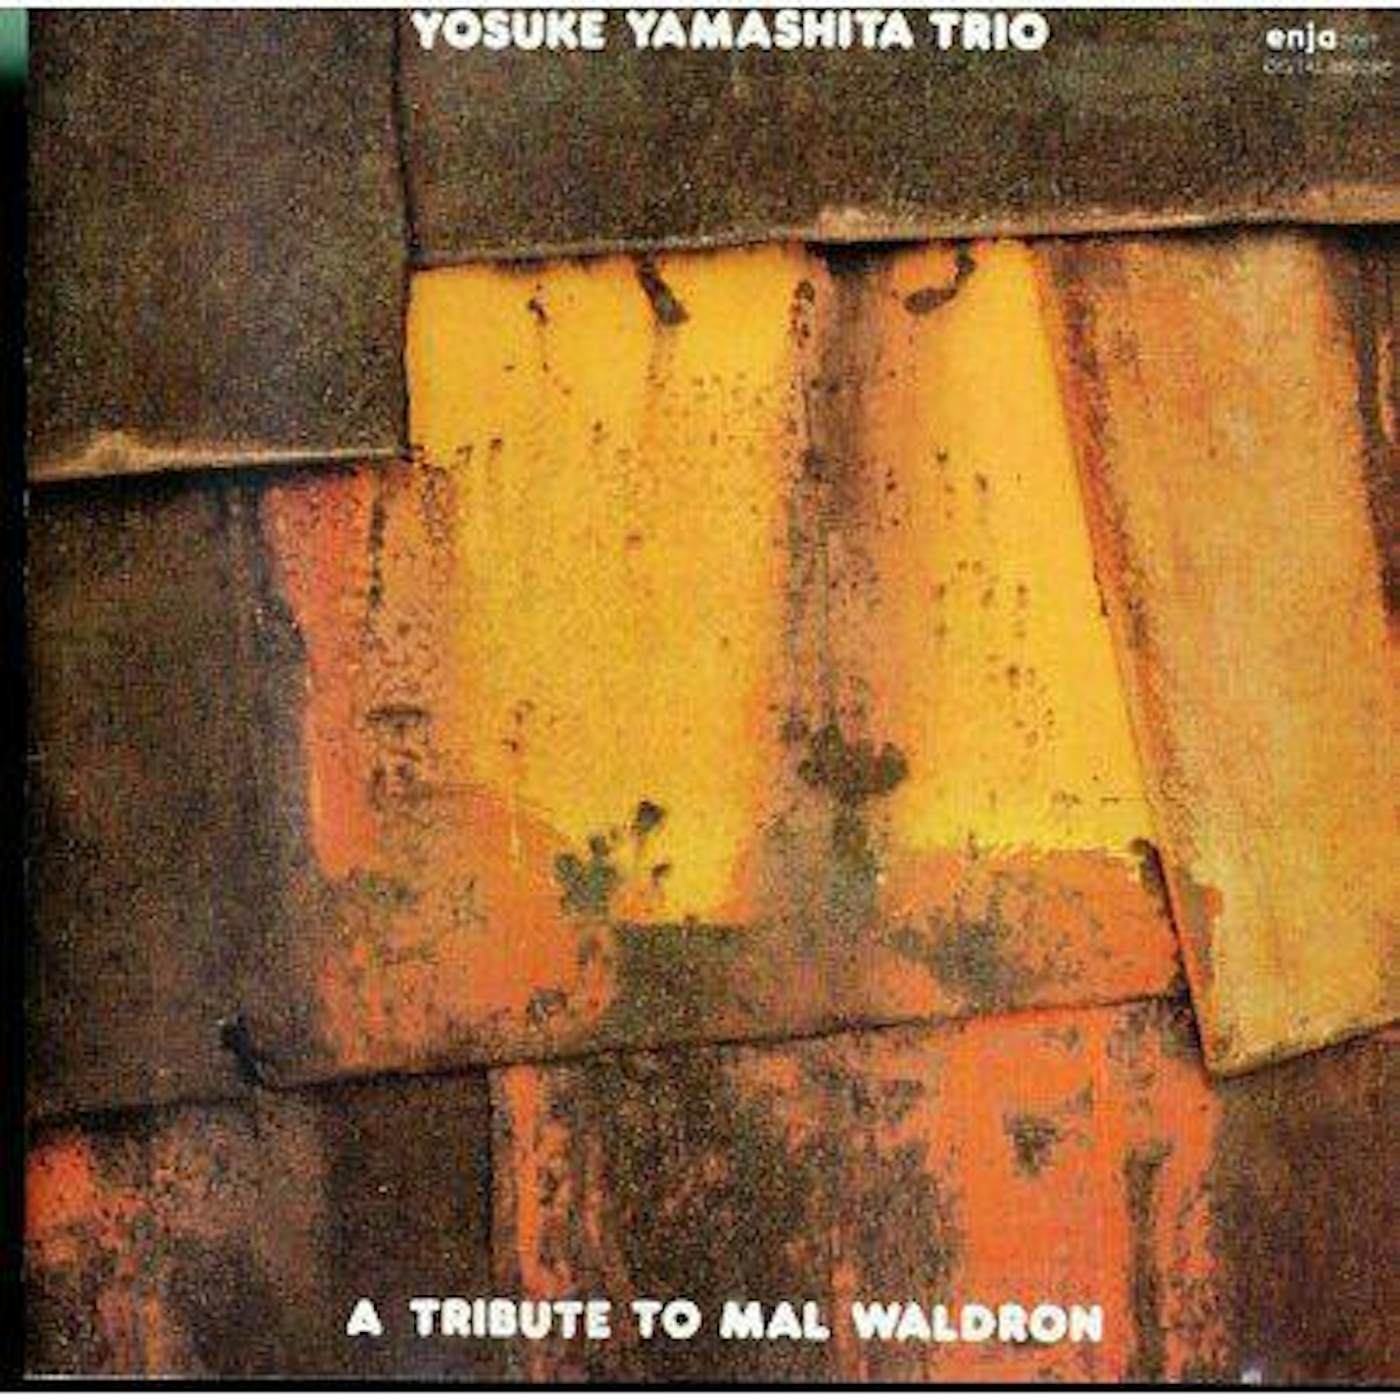 Yosuke Yamashita MAL WALDRON CD